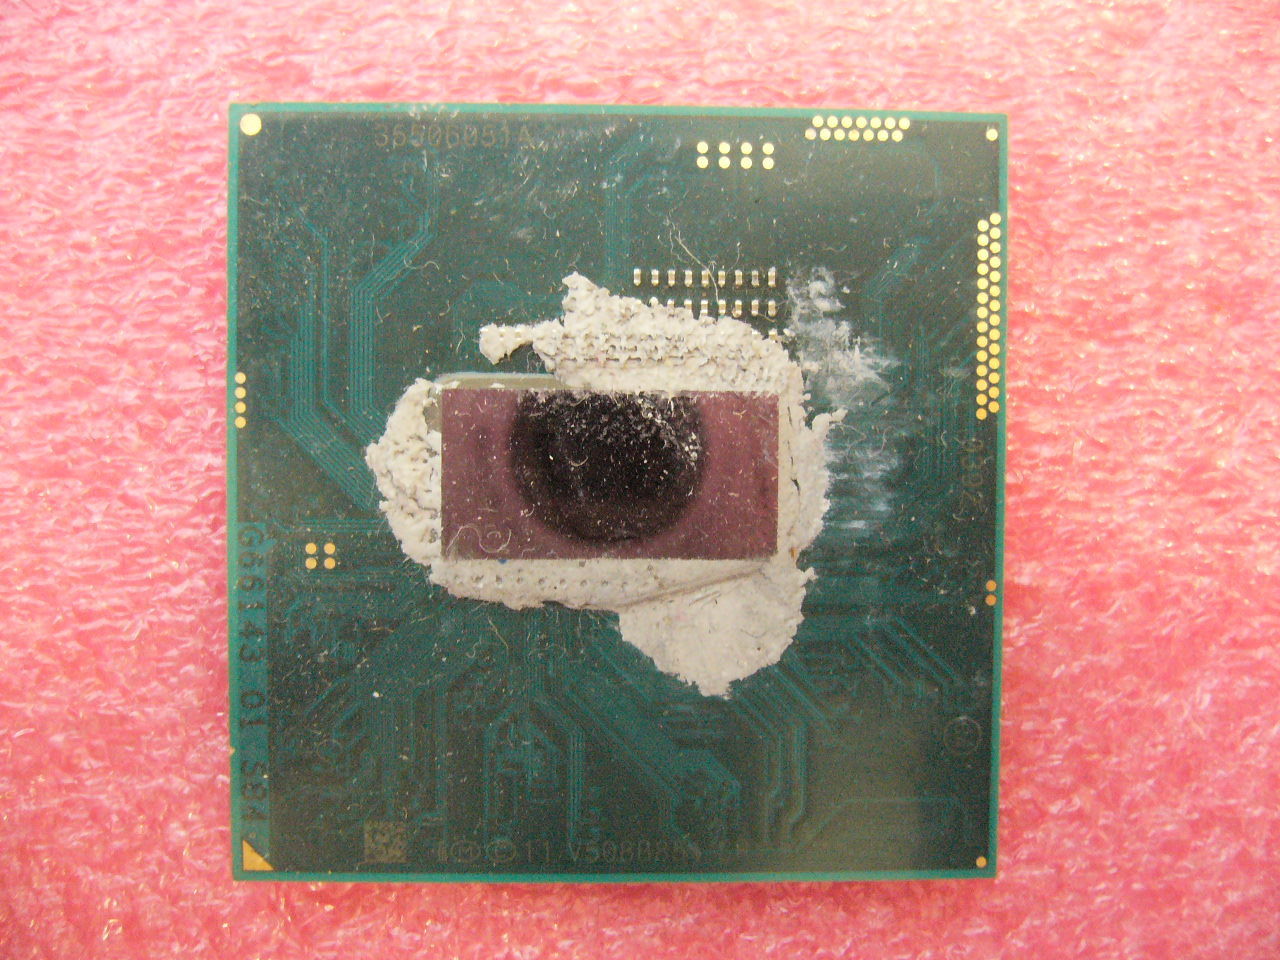 QTY 1x Intel CPU i7-4610M Dual-Core 3.0 Ghz rPGA946 SR1KY Socket G3 NOT WORKING